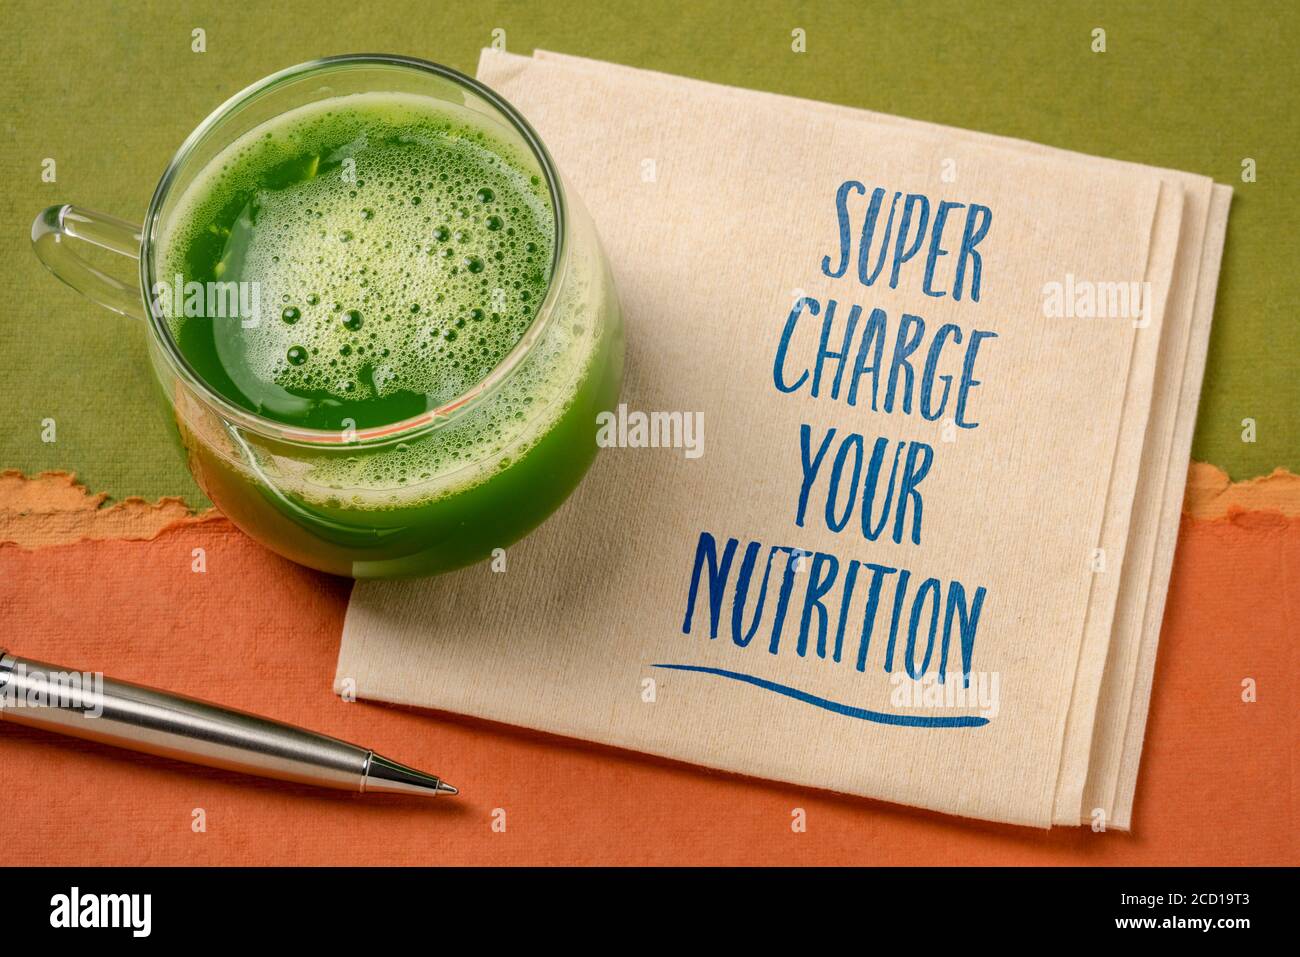 Super laden Sie Ihre Ernährung inspirierende Note - Handschrift auf einer Serviette mit einem Glas frischen, grünen Gemüsesaft, gesunde Ernährung und Lifestyle Co Stockfoto